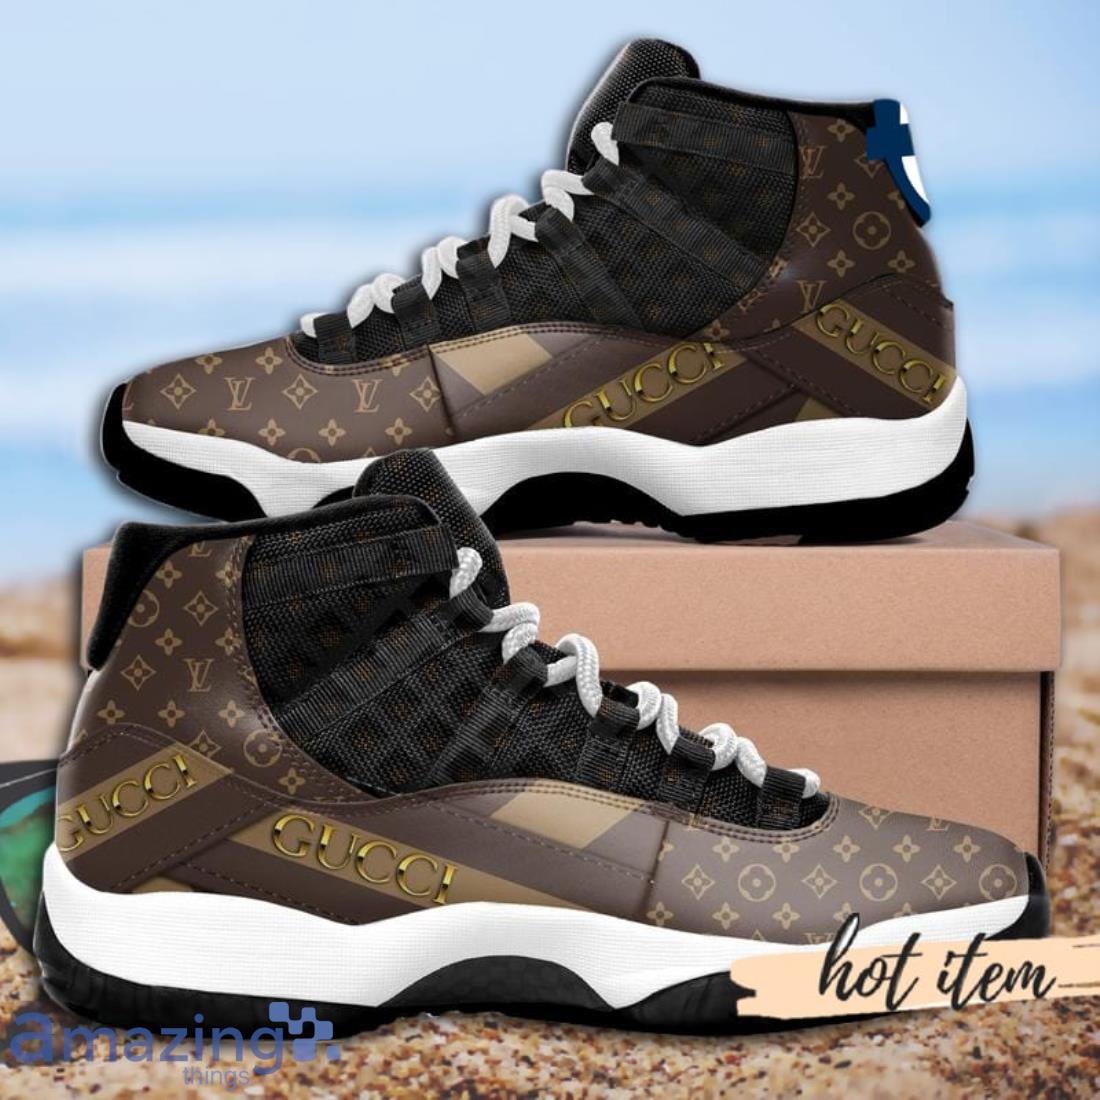 Gucci Sneaker Air Jordan 13 Sneaker Shoes - Banantees